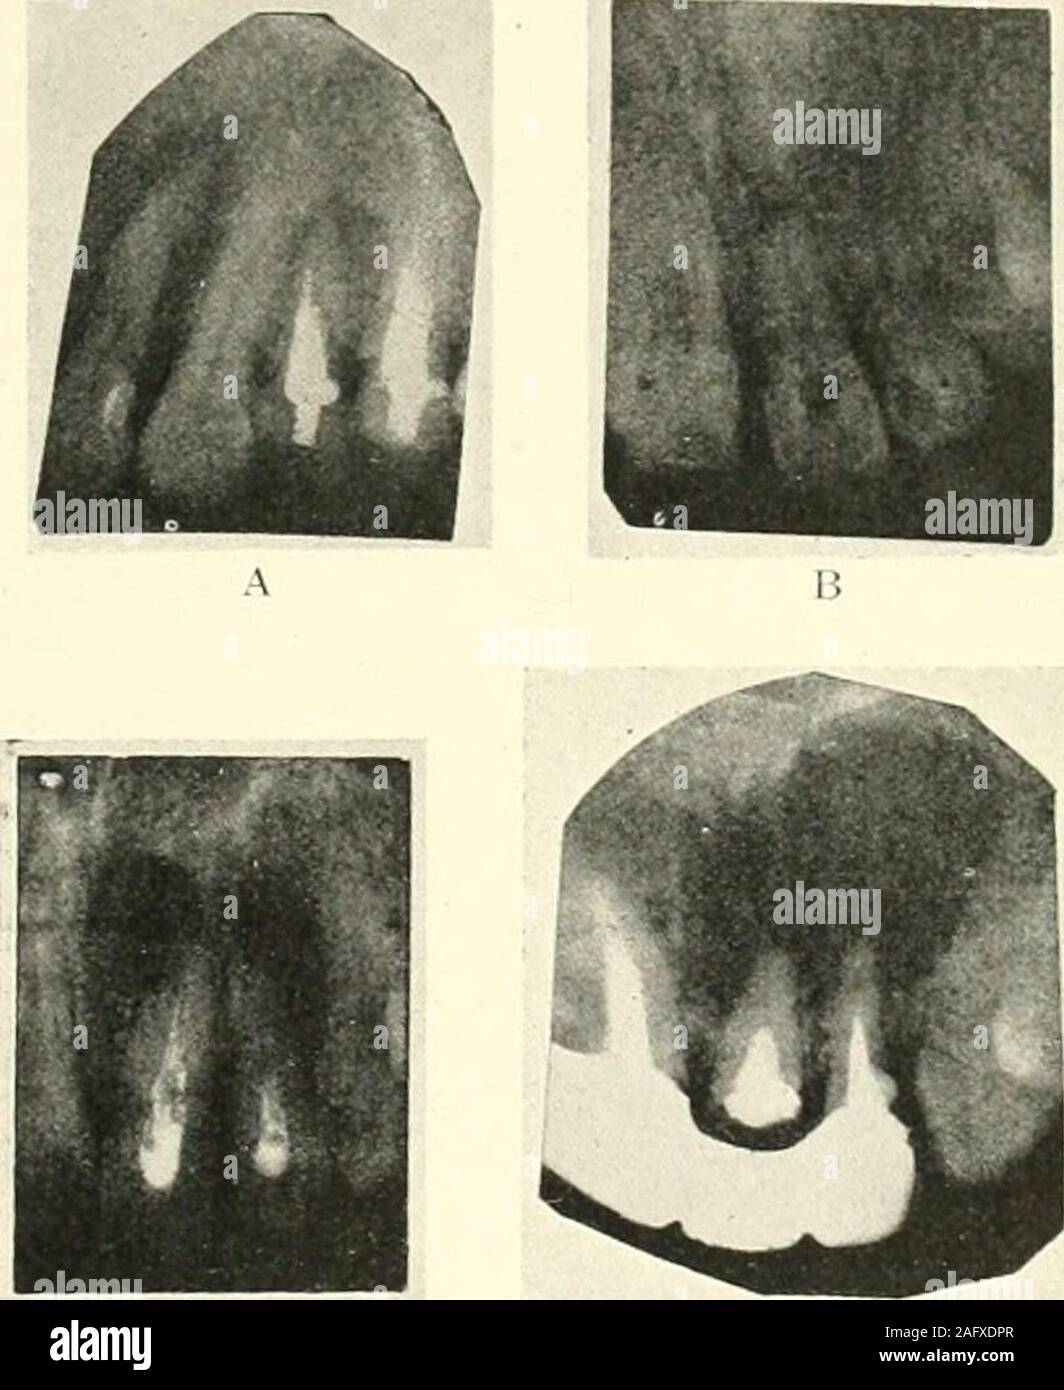 . La science et la pratique de la chirurgie dentaire. Fig. ySO.-Liistal Caries dans tii-st pierre-withpulp molaire inférieure à la fin de matière coronale racine antérieure. dire d'une torsion de l'questionof centrale d'un apex est d'une importance vitale. Dans le cas de dents où la pulpe. Fig. 951. 1) A. L'absorption de l'apex de la première prémolaire supérieure, couronné et raréfaction de l'alvéole. B. après absorption apicale de réimplantation l'incisive centrale supérieure gauche. C. Des abcès de gauche supérieure et centrale incisives latérales. Certains l'absorption de l'apex du latéral gauche.1). Le kyste dentaire : gauche supérieure et latérale centrale api incisorswith Banque D'Images